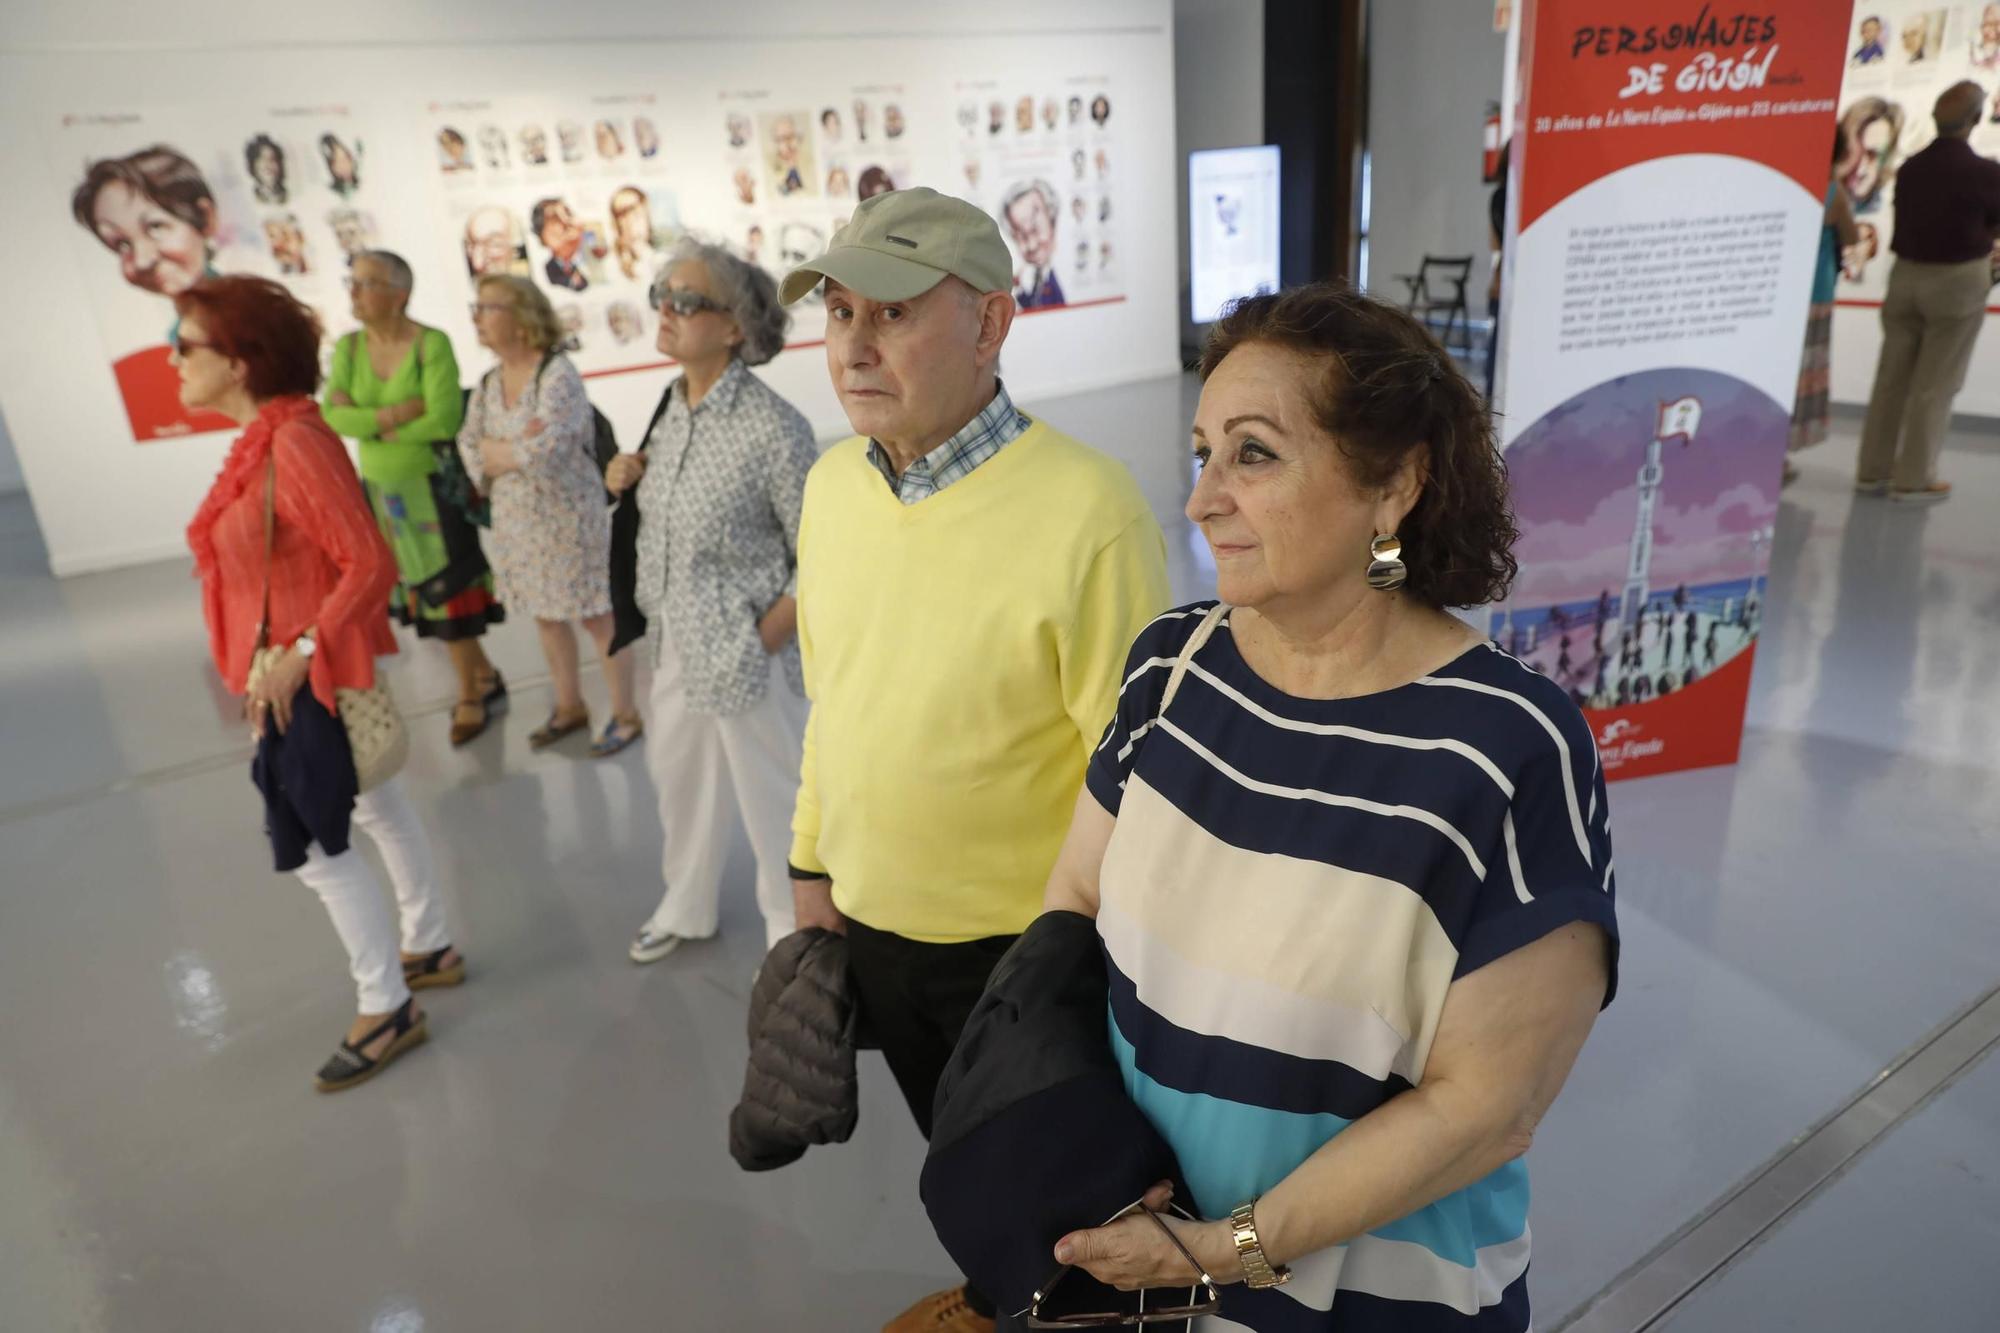 La ciudad aplaude la exposición "Personajes de Gijón" (en imágenes)